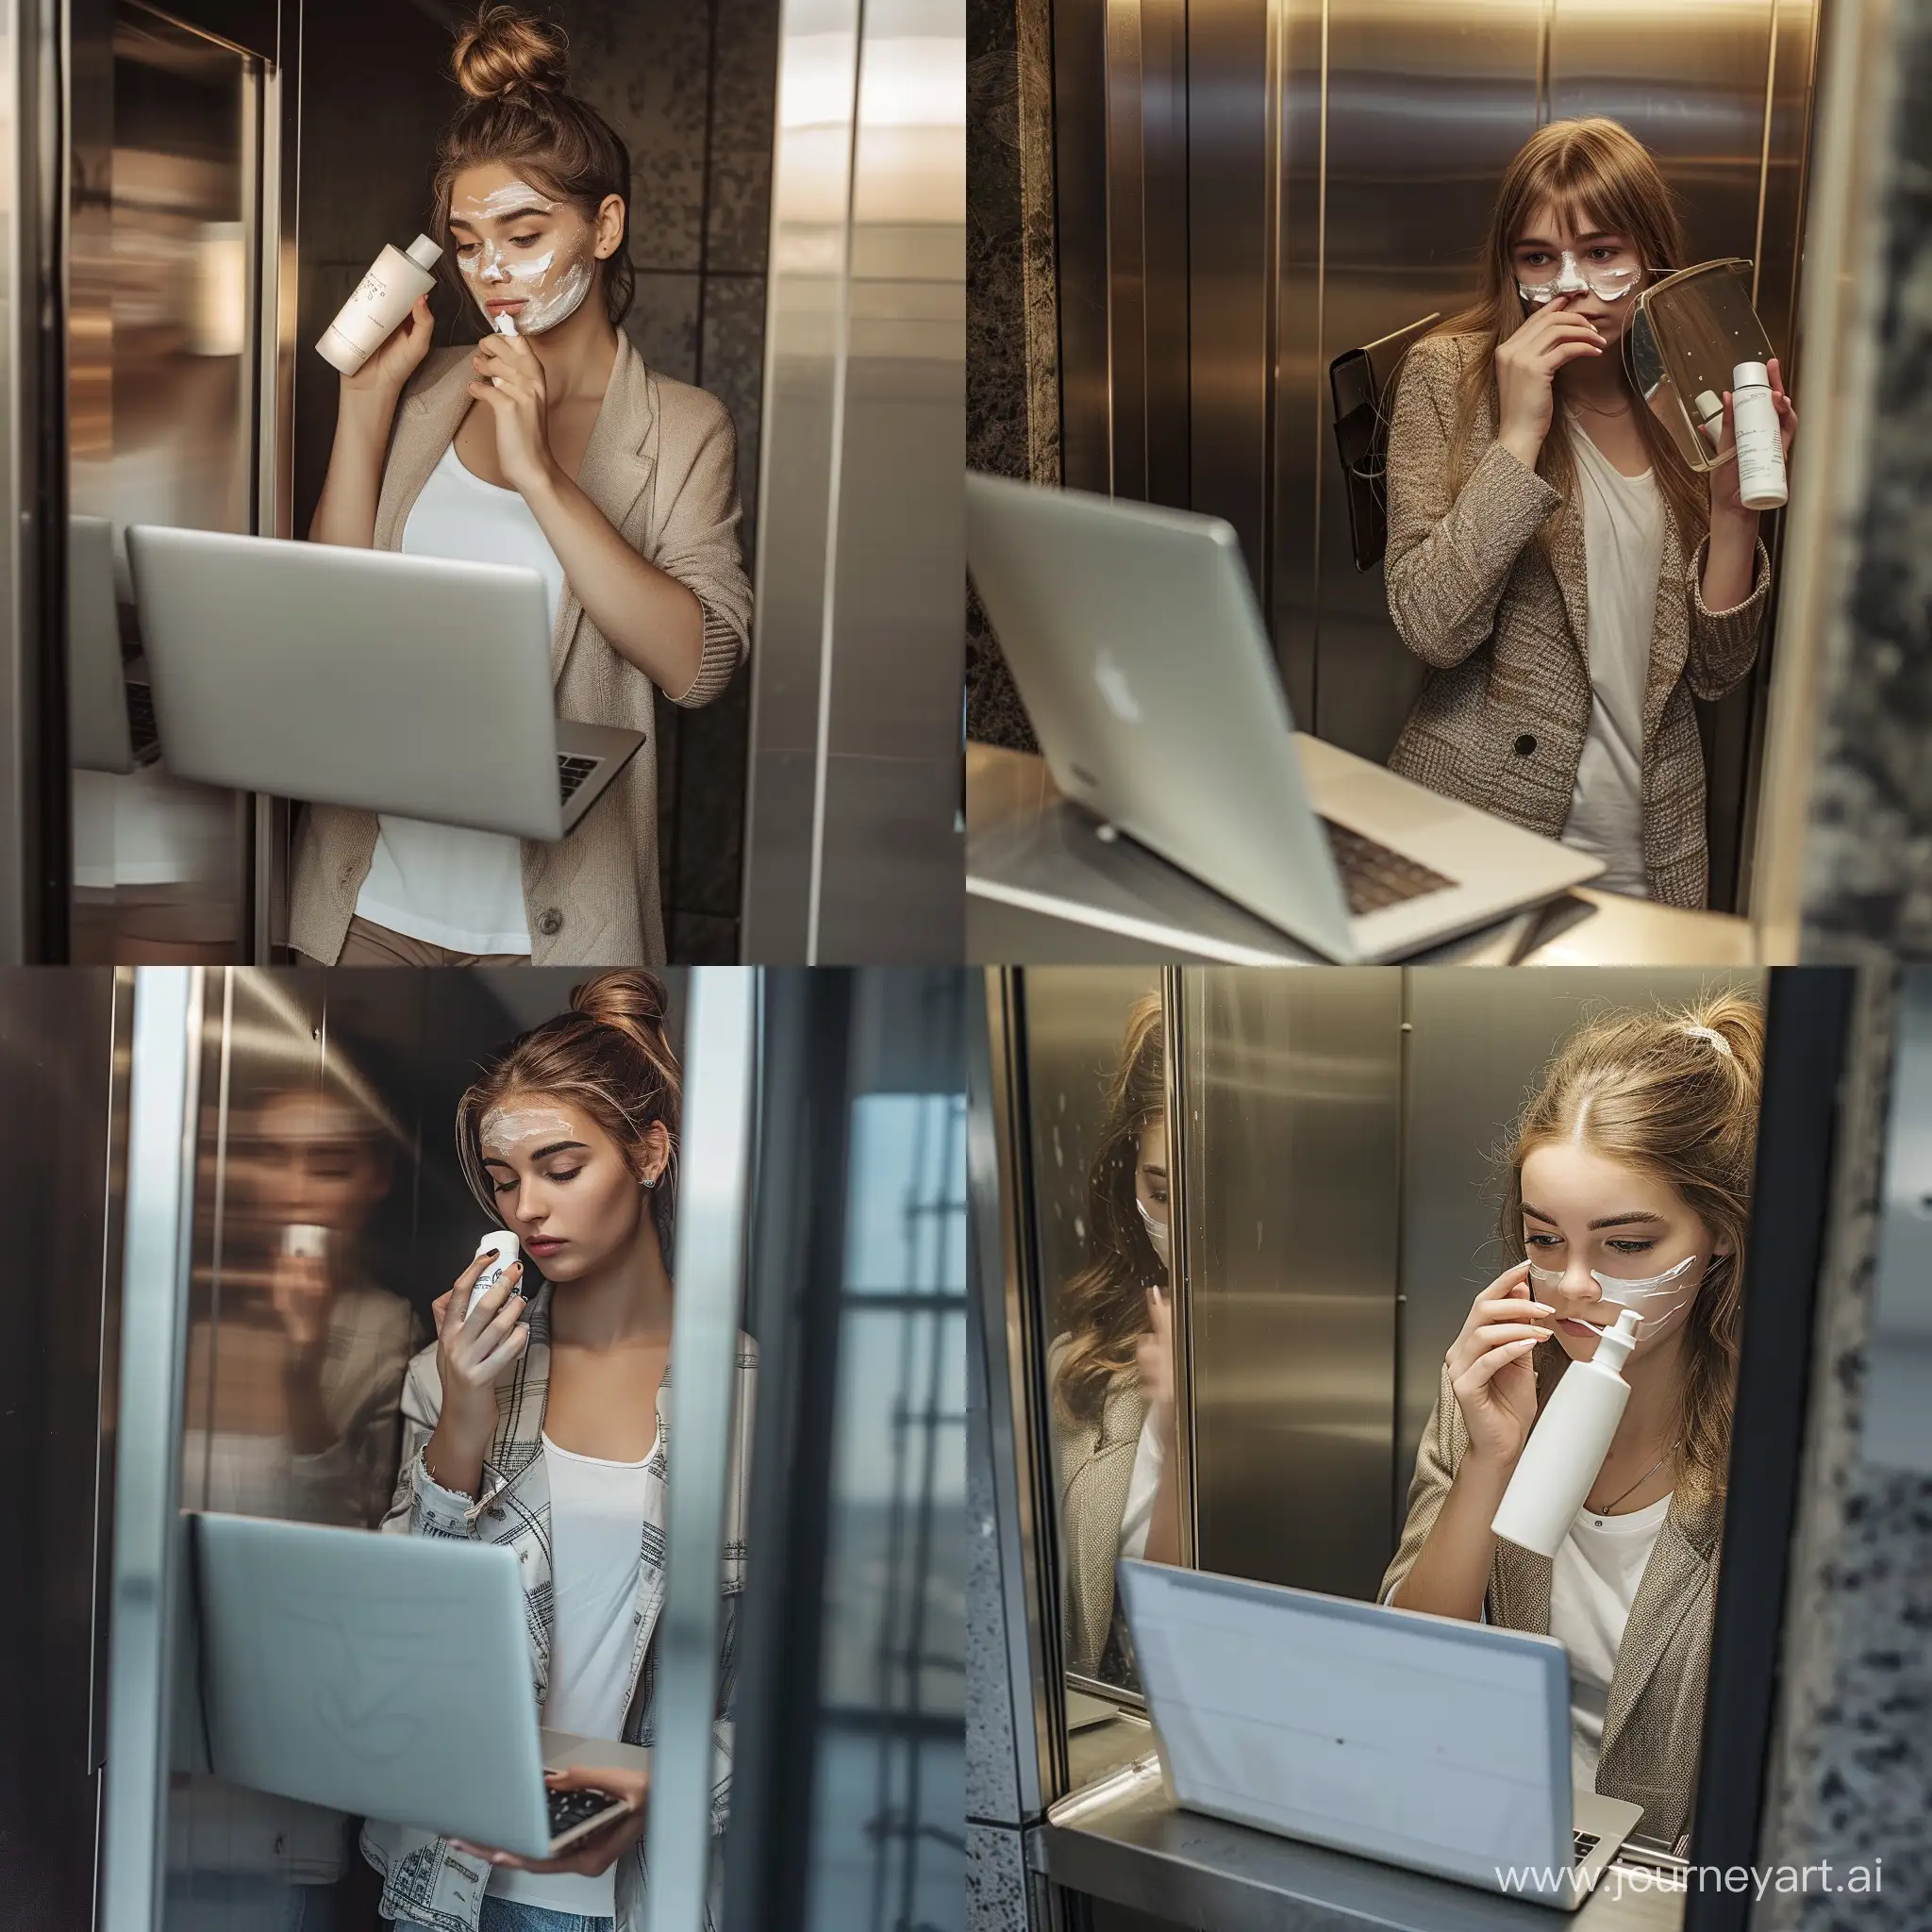 молодая девушка в лифте смотрит в зеркало, в одно руке у нее ноутбук, в другой руке крем для лица, она наносит крем для лица себе на лицо, она одета в одежду стиля casual  